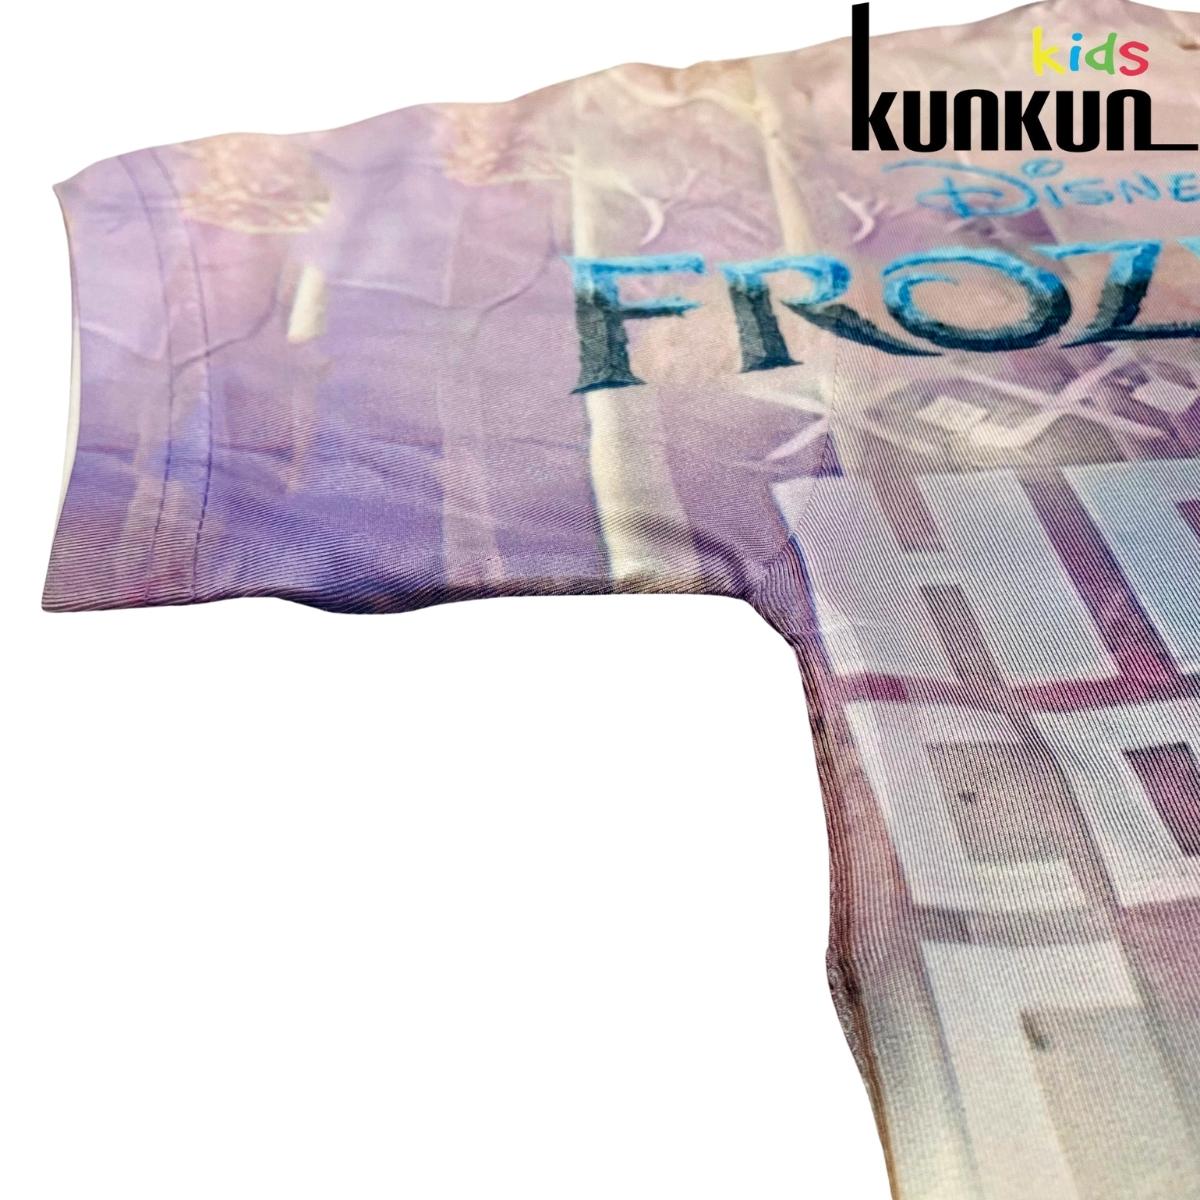 Quần áo trẻ em KUNKUN TP825 in 3d hình elsa size đại từ 10-60kg chất thun lạnh cho bé gái